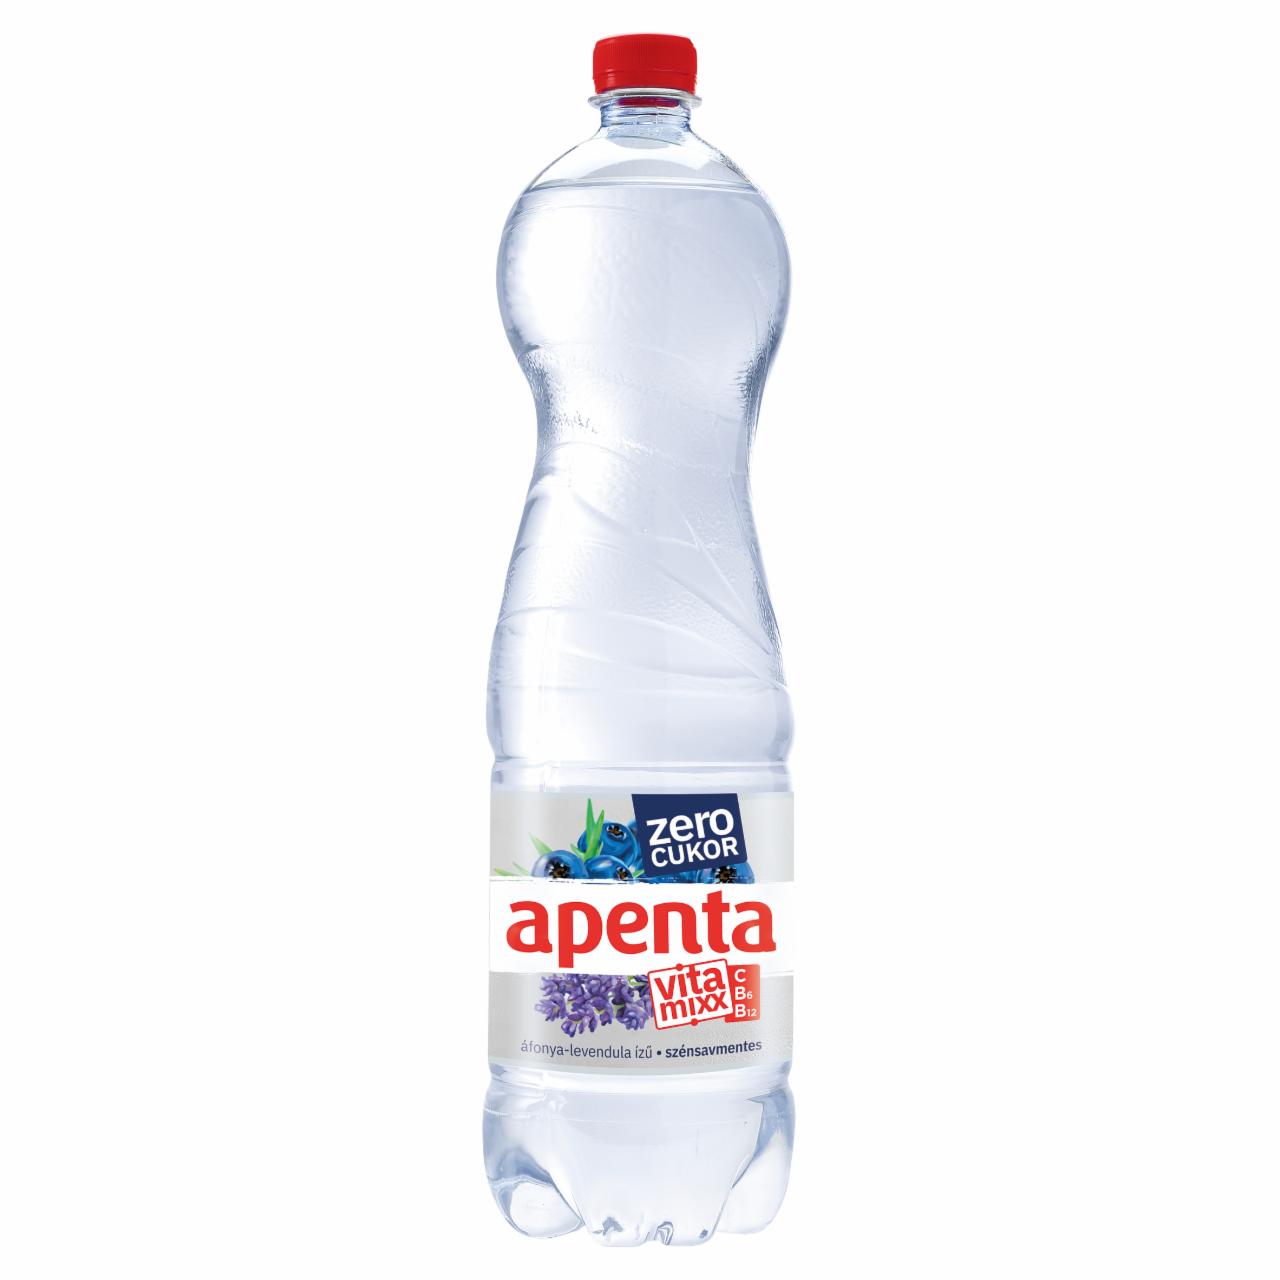 Képek - Apenta Vitamixx Zero áfonya-levendula ízű szénsavmentes, energiamentes üdítőital 1,5 l